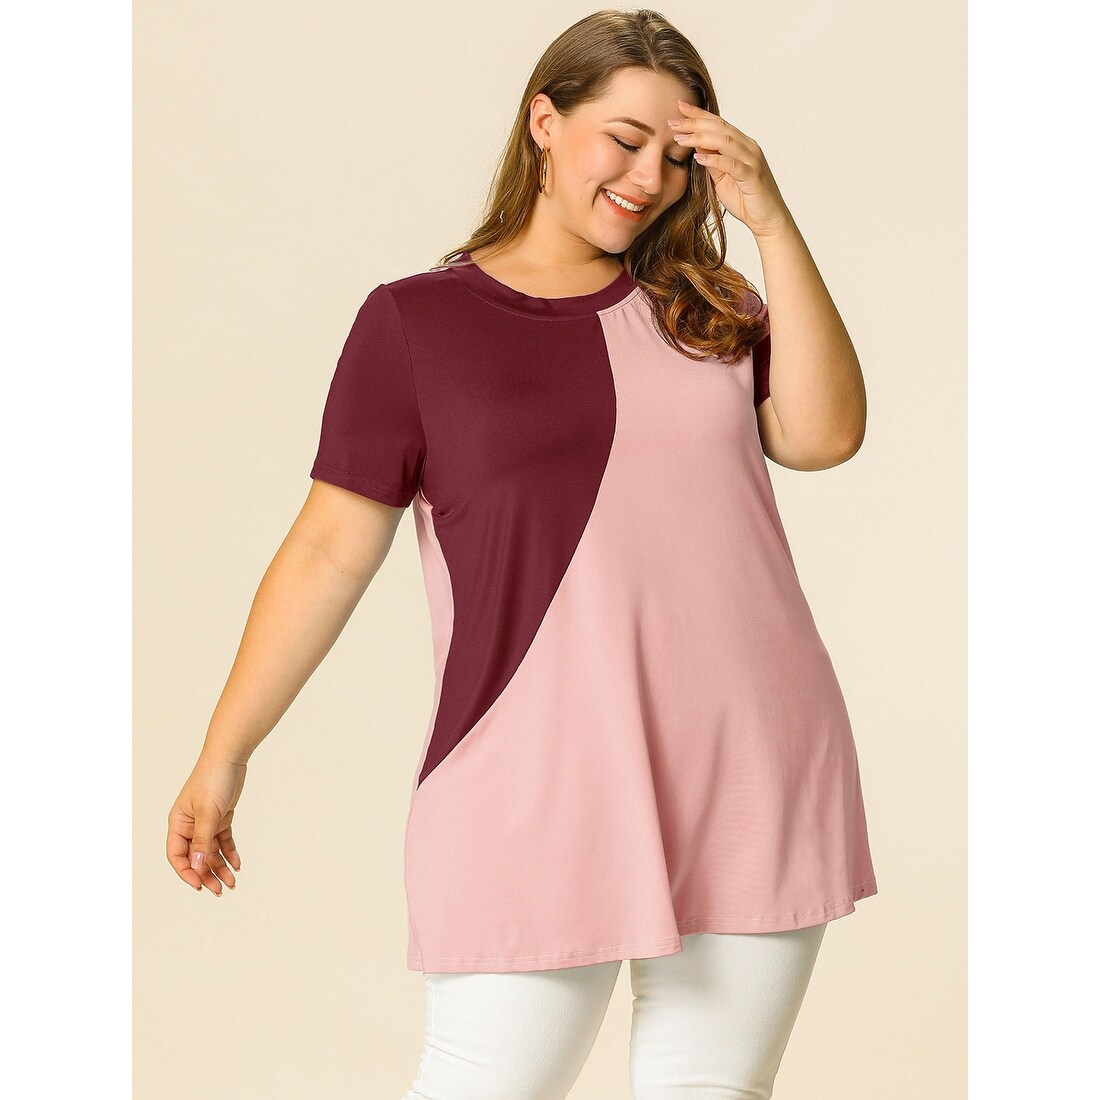 Lykkelig Bliv såret køkken Women's Plus Size Top Color Block Sleeve Tunic Tops - Overstock - 31117846